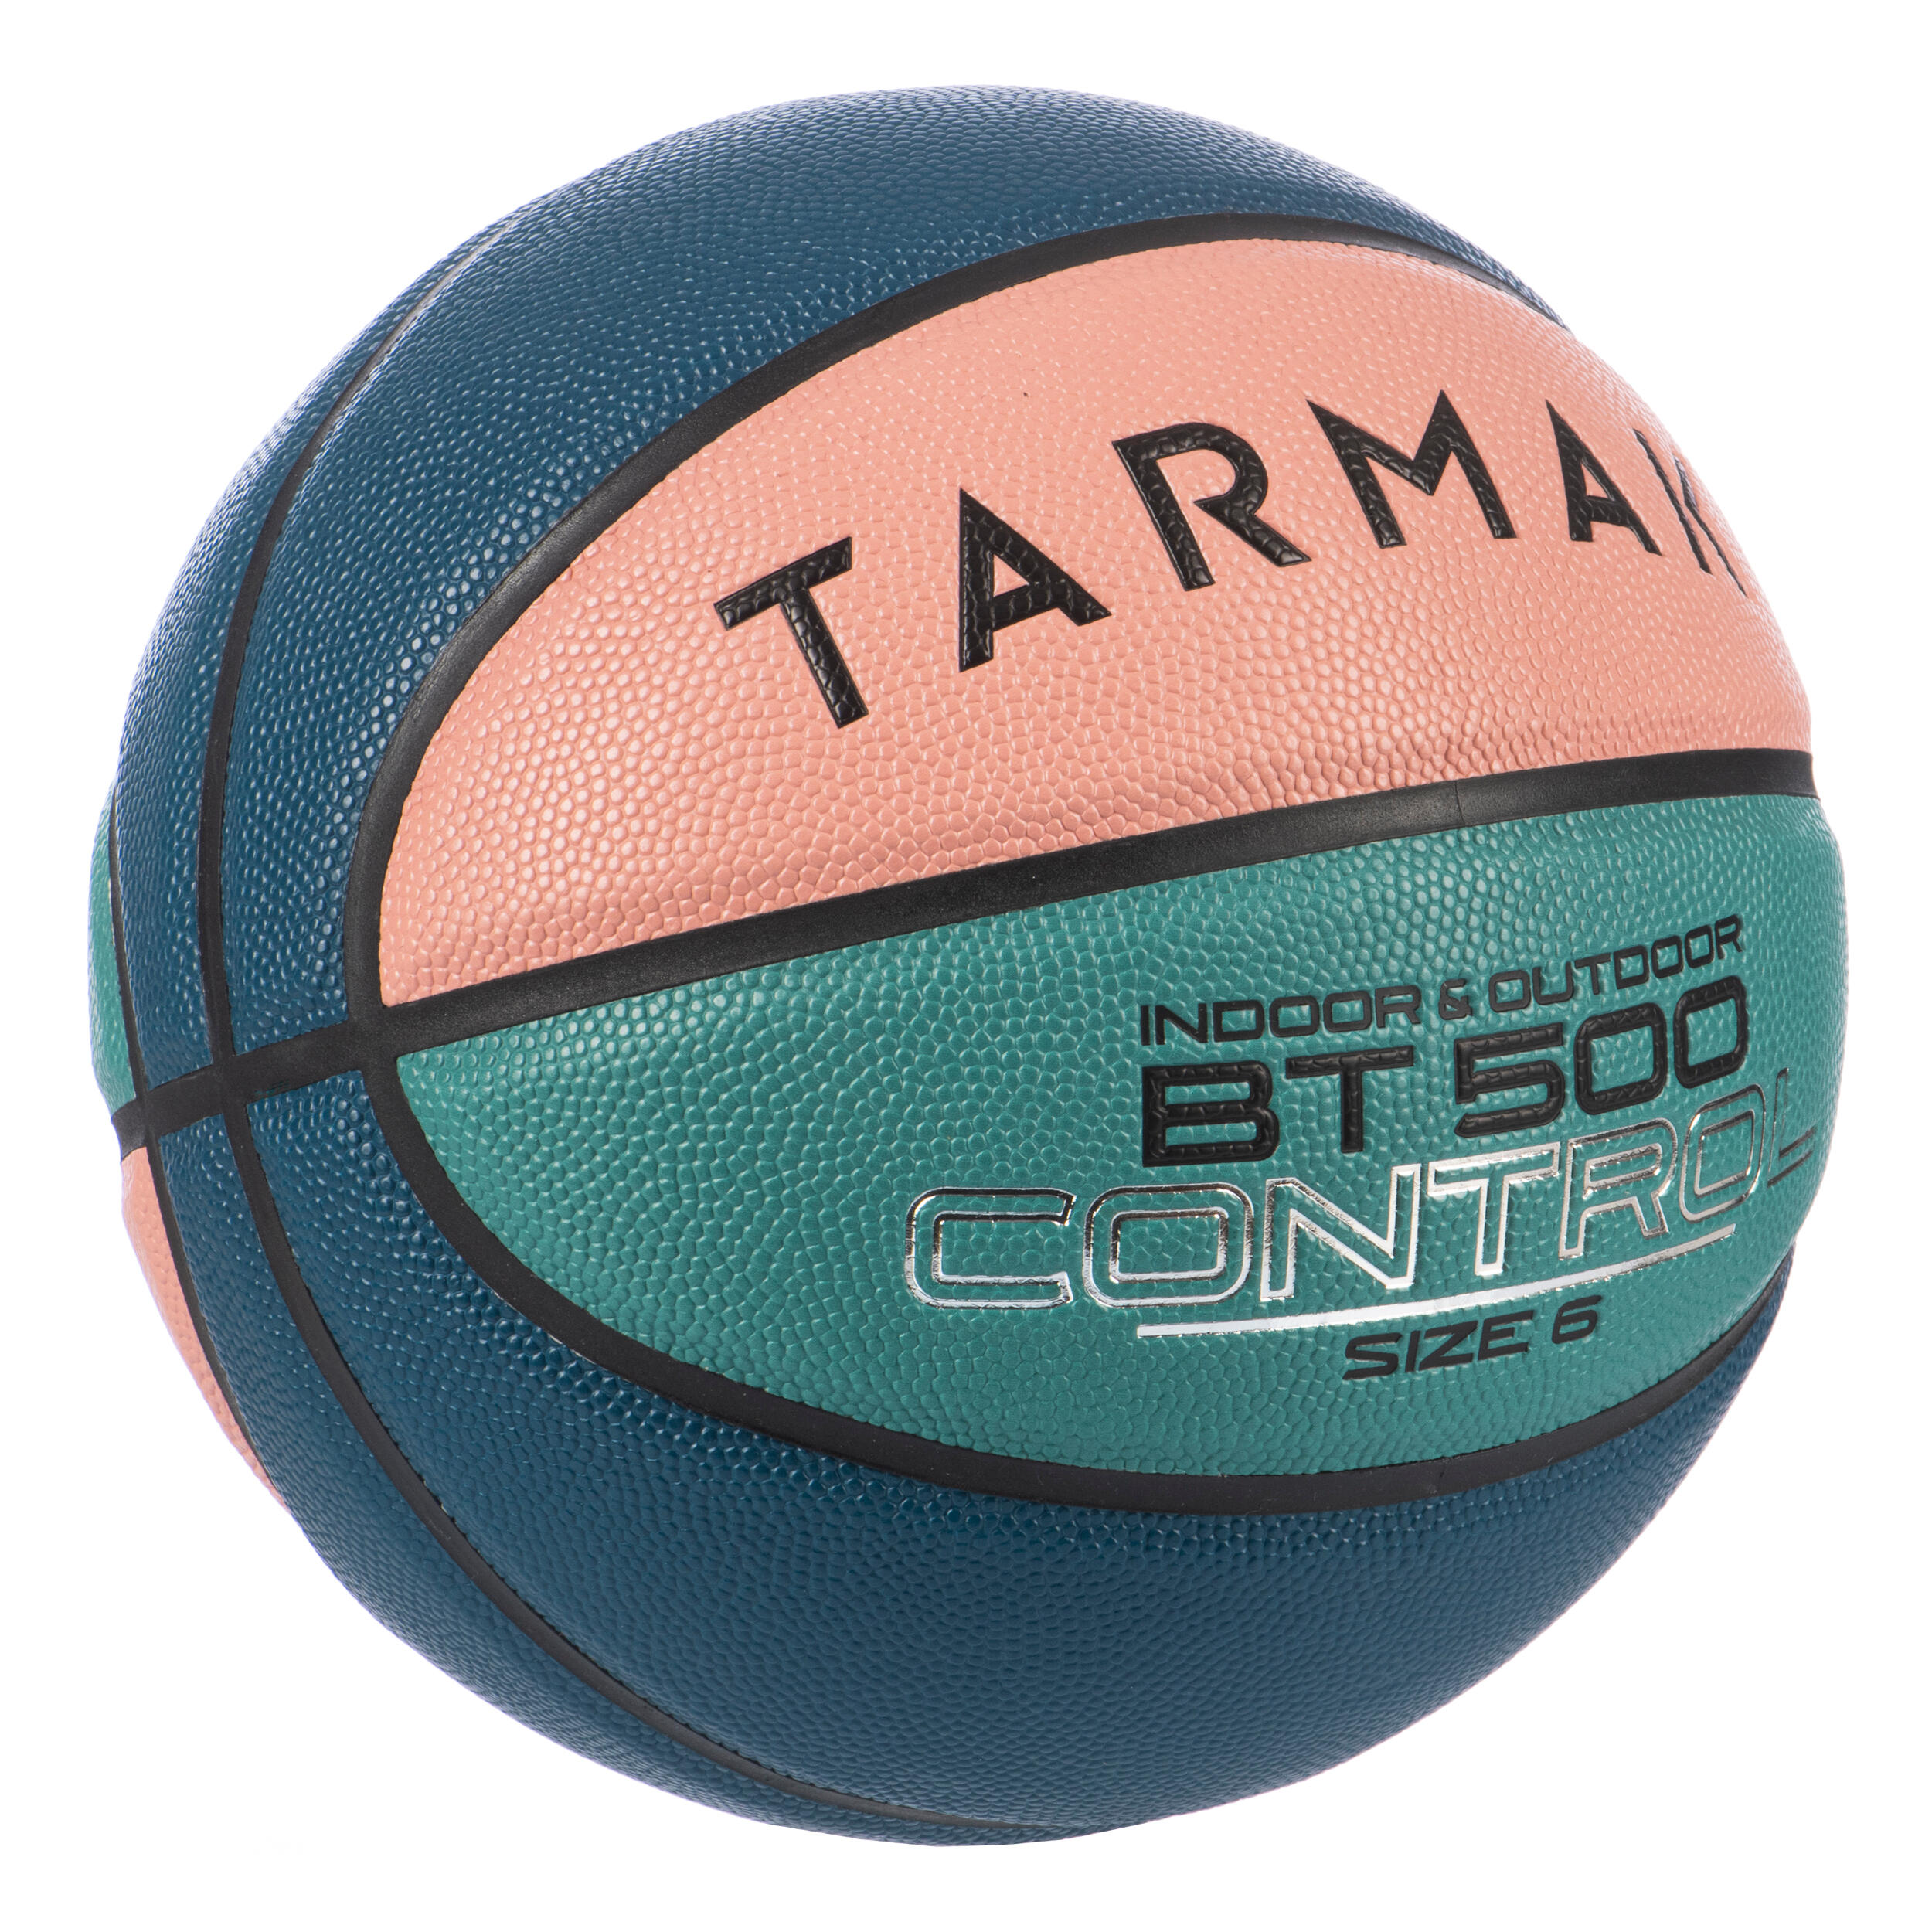 Size 6 Basketball BT500 - Pink/Green/Blue 3/5